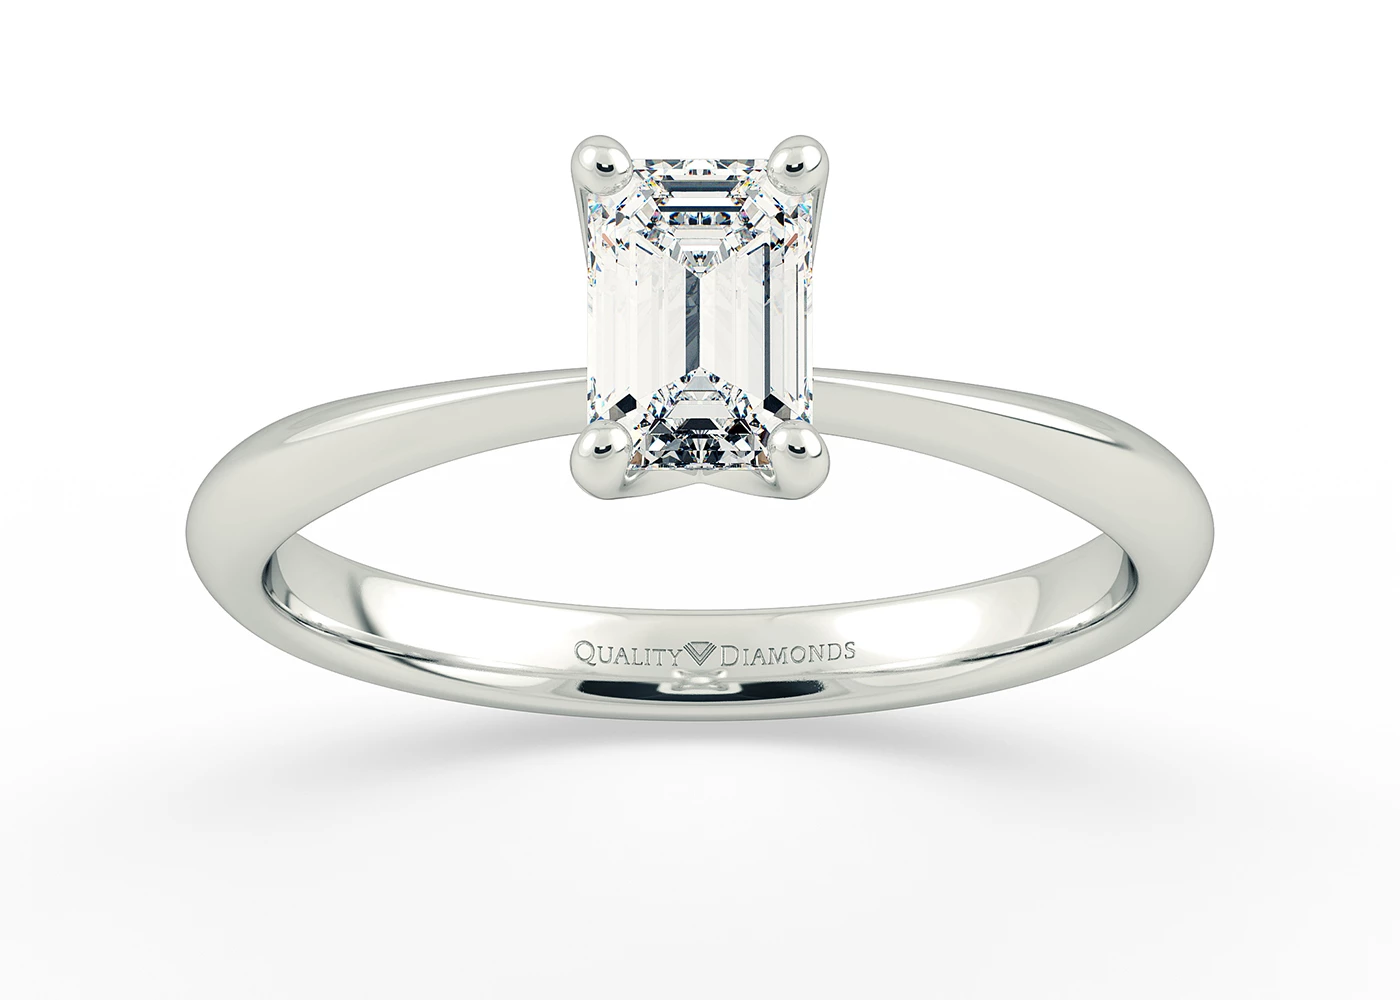 Half Carat Emerald Solitaire Diamond Engagement Ring in Platinum 950